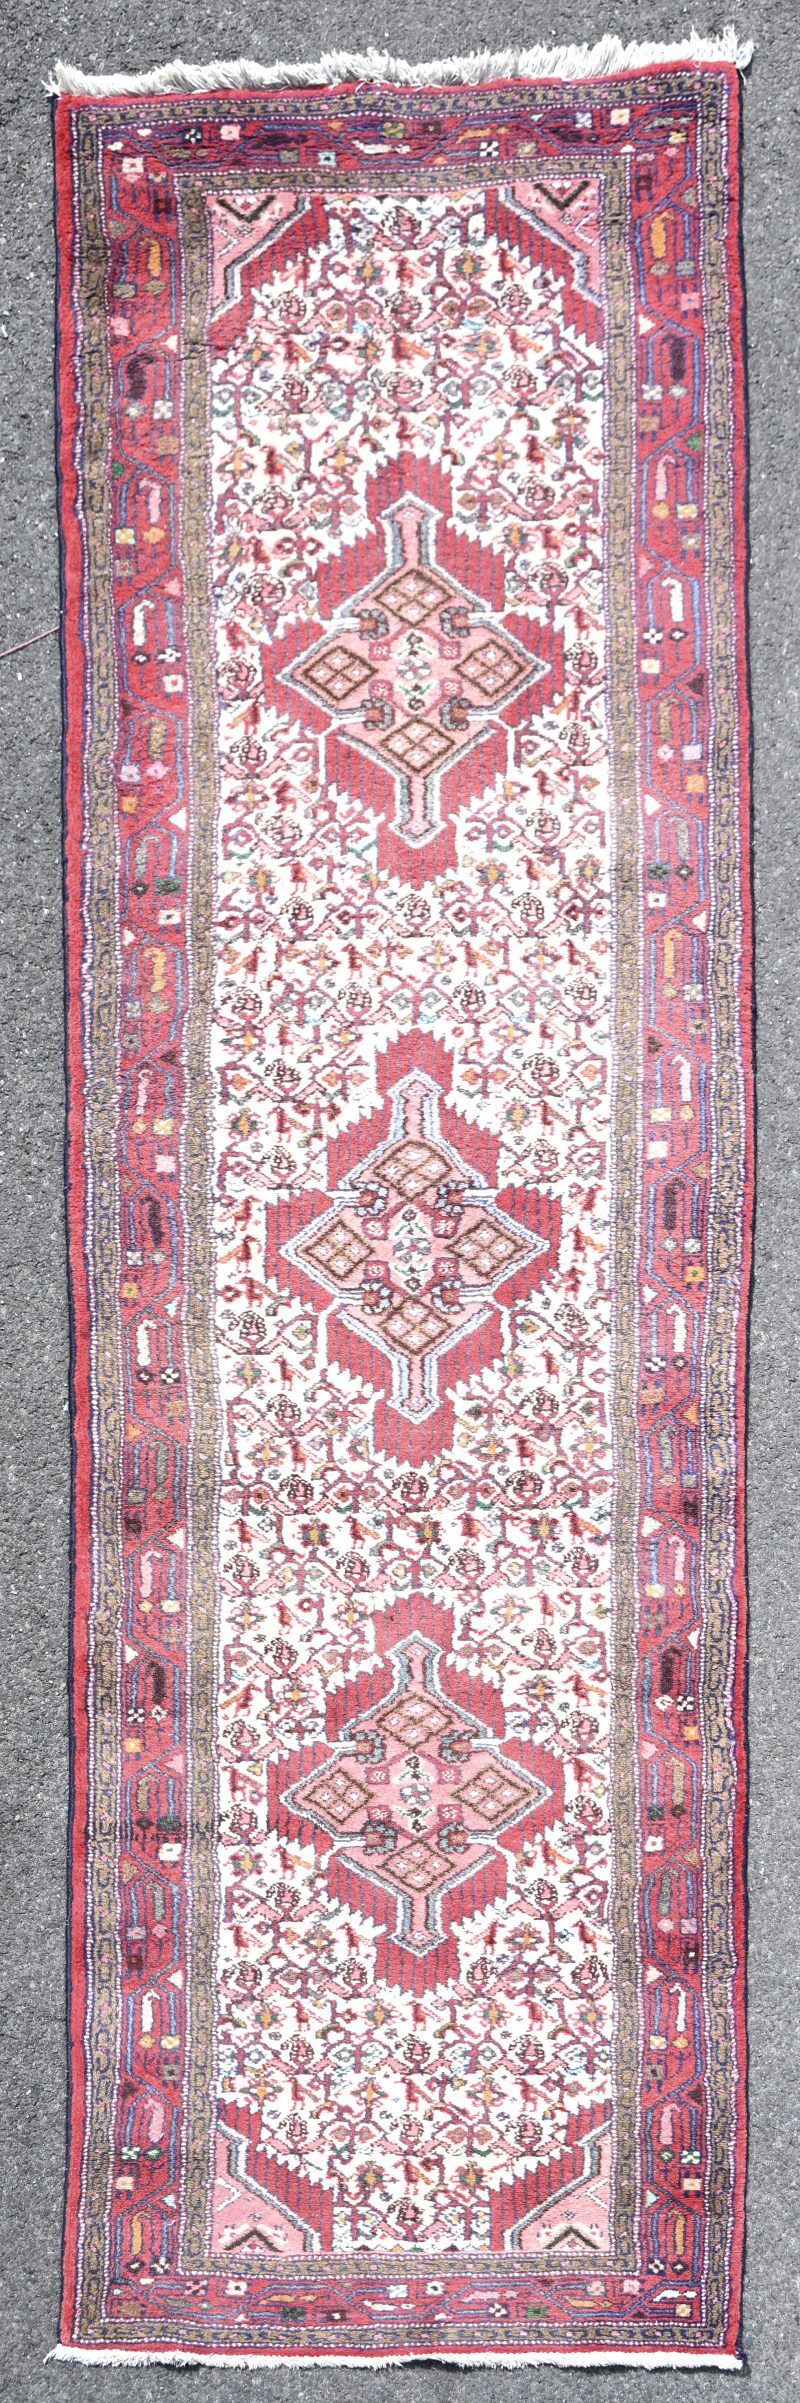 Een Iraans handgeknoopt tapijt, genummerd A-8409.